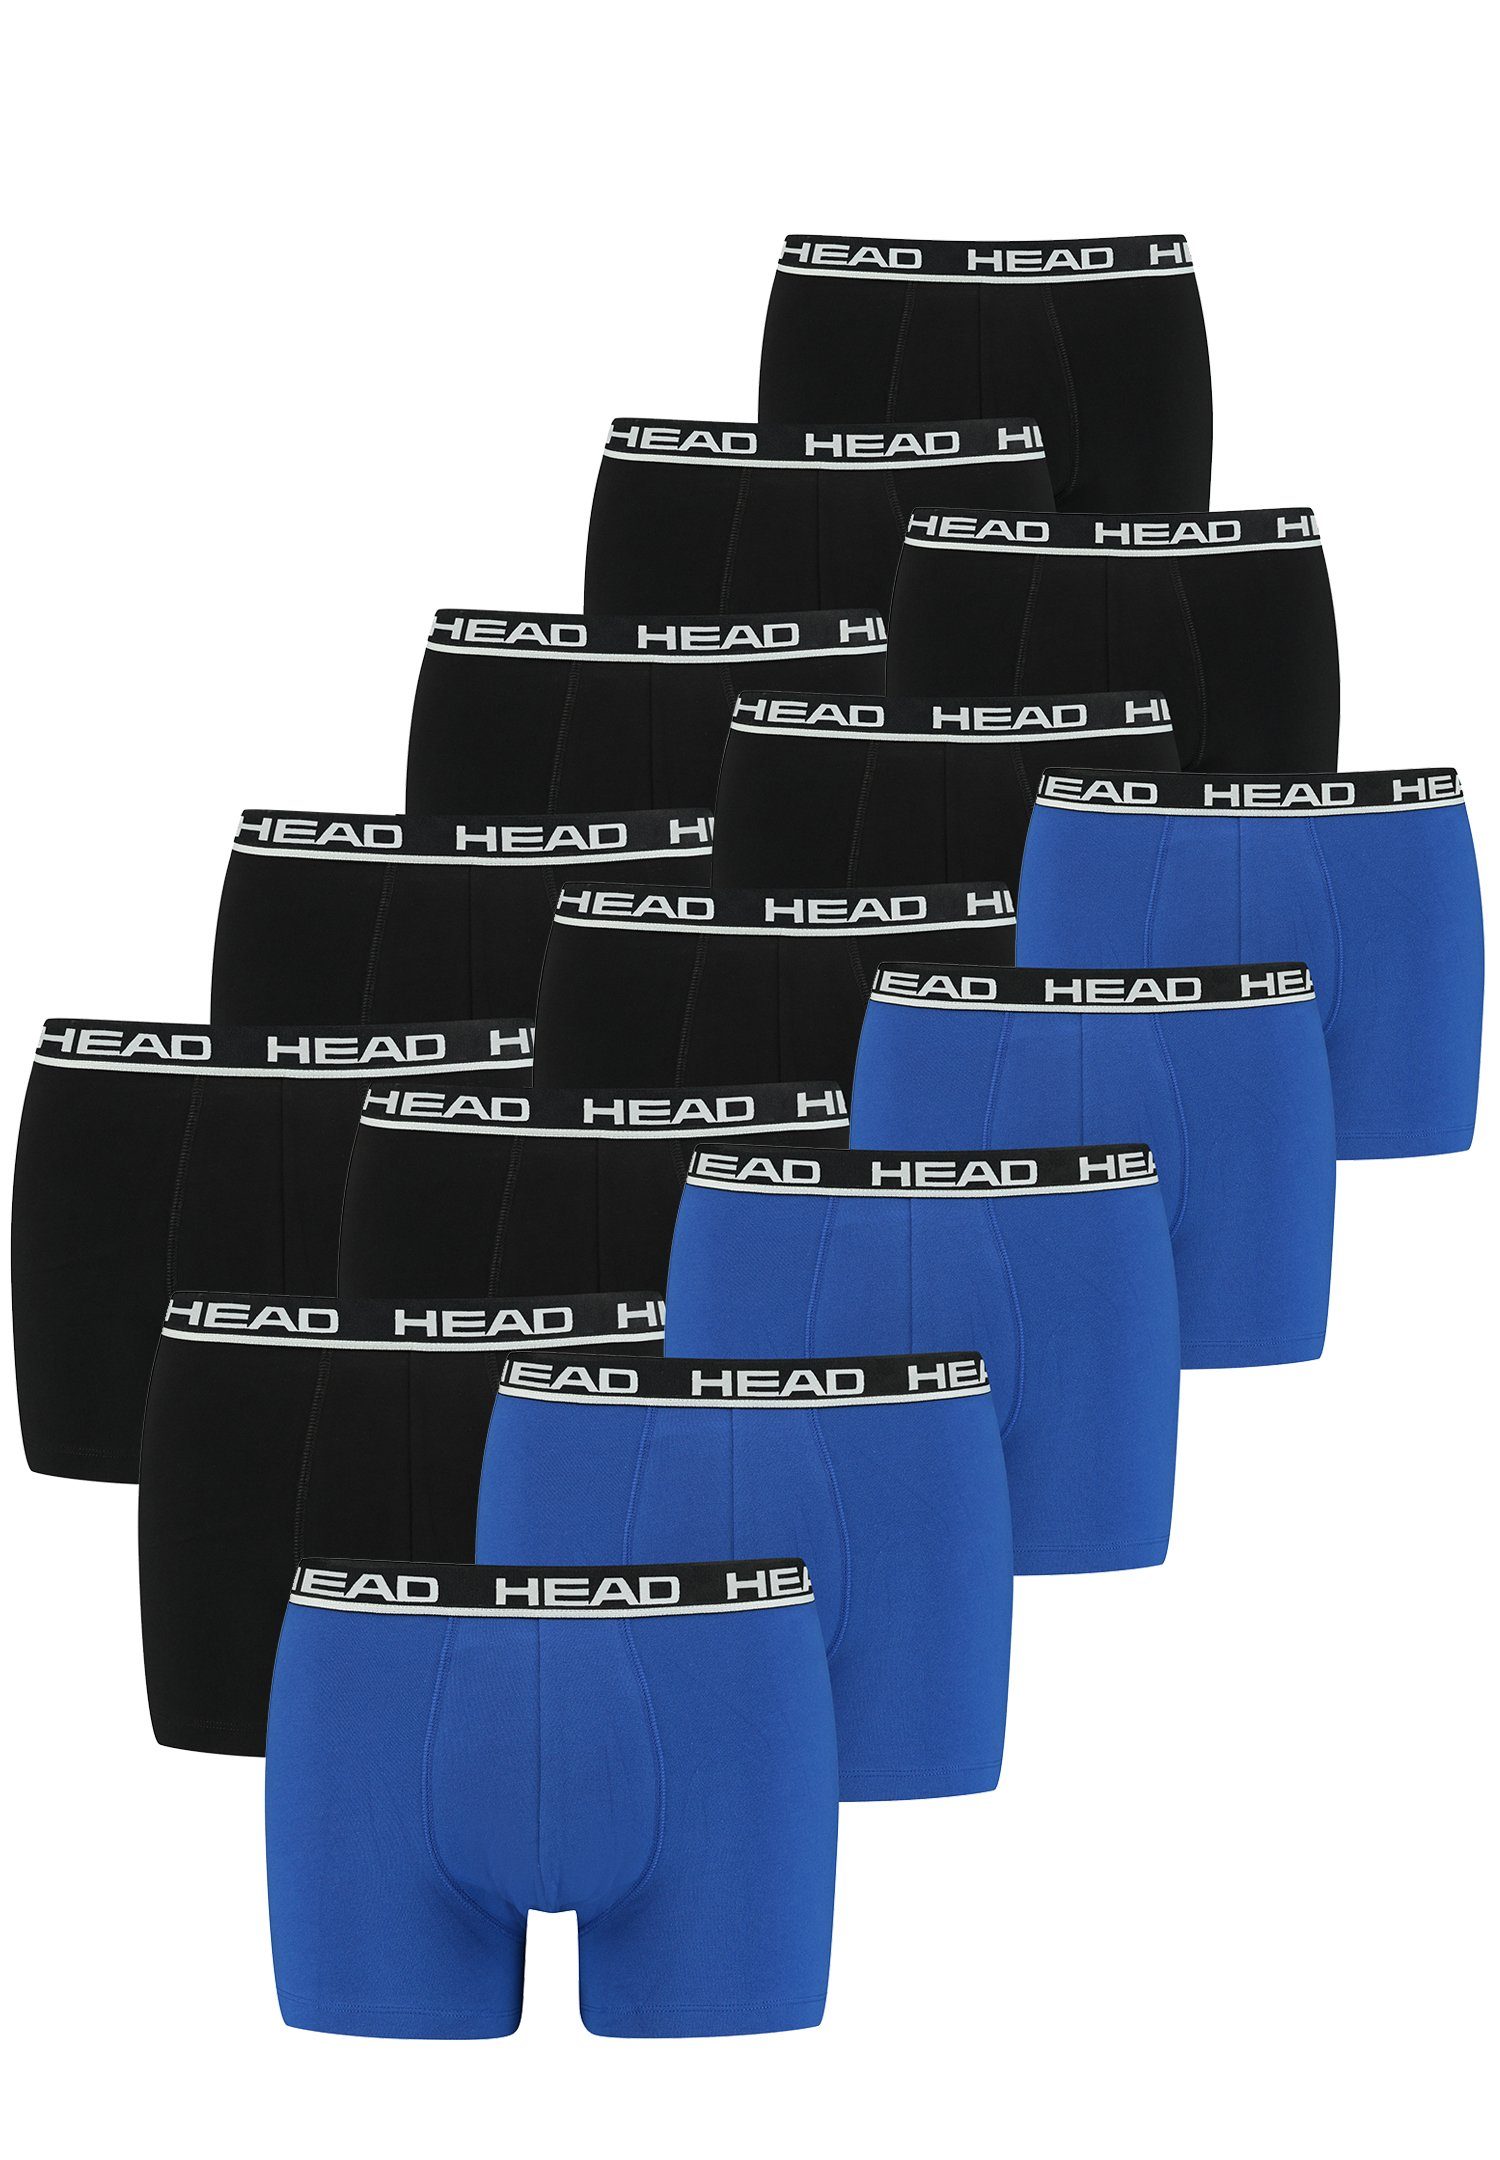 Boxershorts Pack Boxer - 15er-Pack) 021 / blue 15 er Head (15-St., black